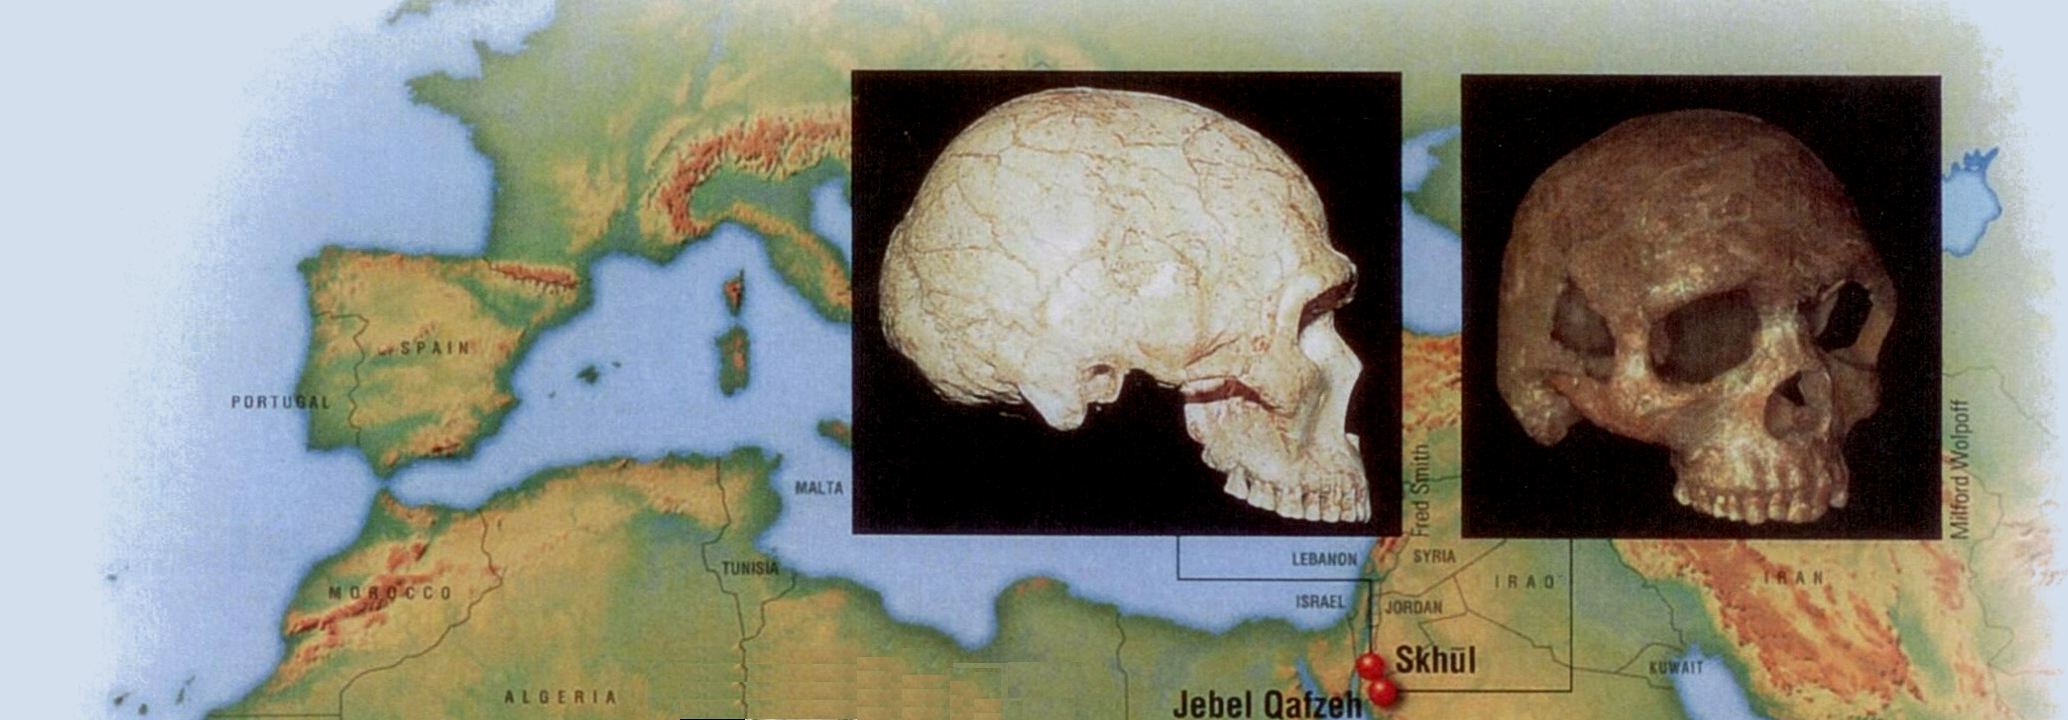 Τα κυριότερα απολιθώματα του ανατομικά σύγχρονου Σοφού Ανθρώπου: Ανατολή Χρονολογία 115.000 χρόνια πριν Θέση Σχουλ (Ισραήλ) 110.000 χρόνια πριν Καφζέ (Ισραήλ) Εξελικτική σημασία Τουλάχιστον 10 άτομα.